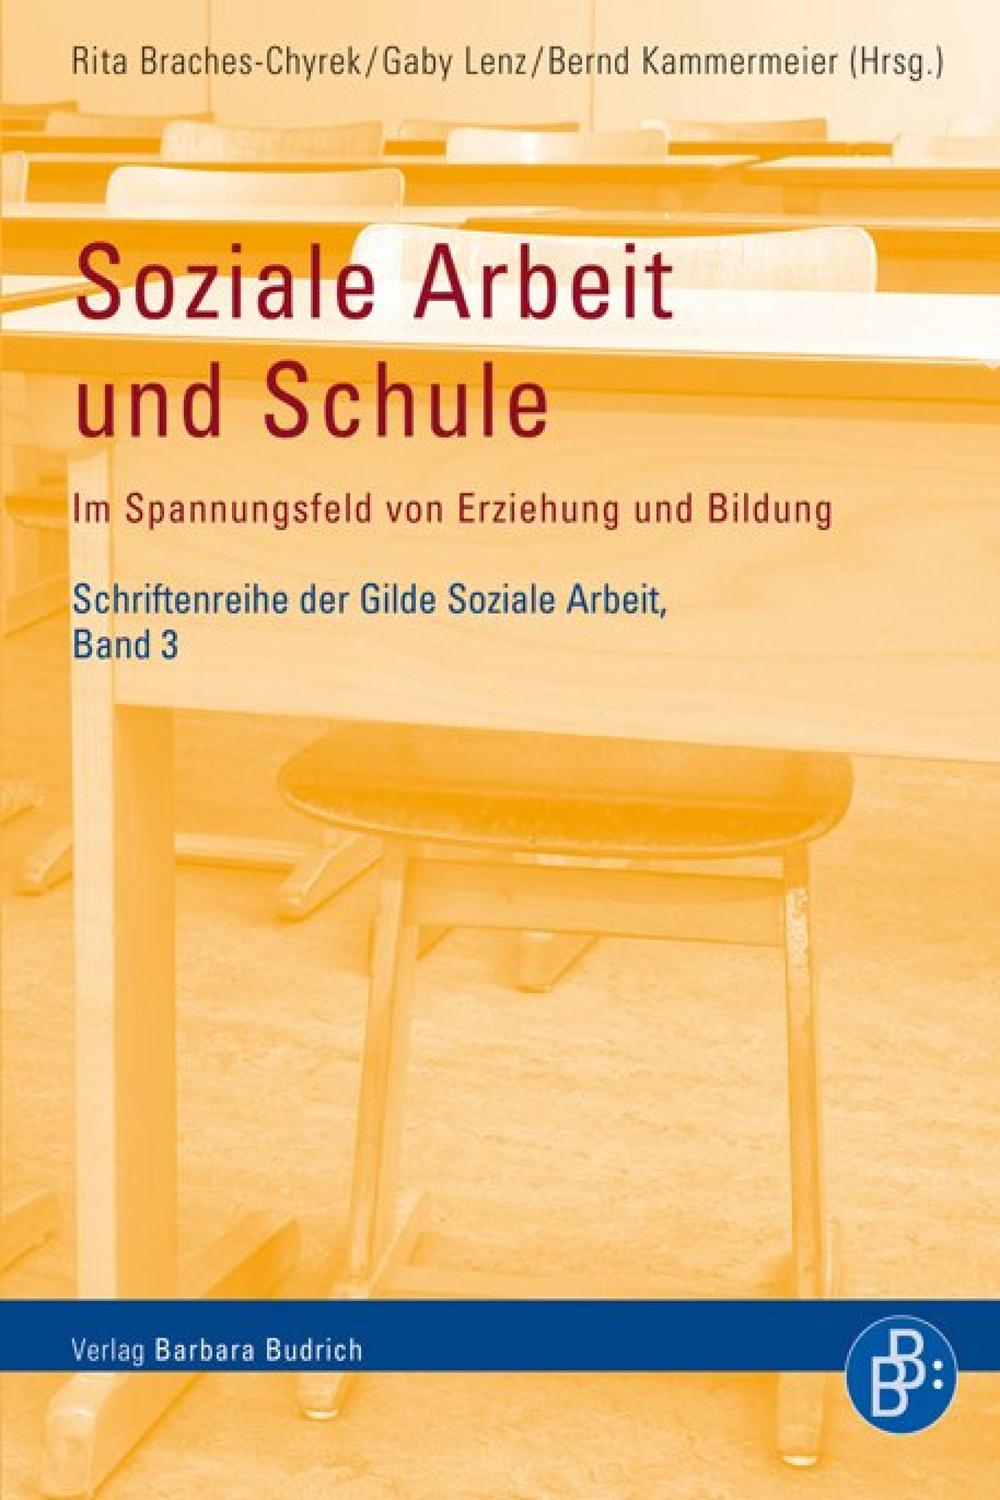 Soziale Arbeit und Schule - Rita Braches-Chyrek, Gaby Lenz